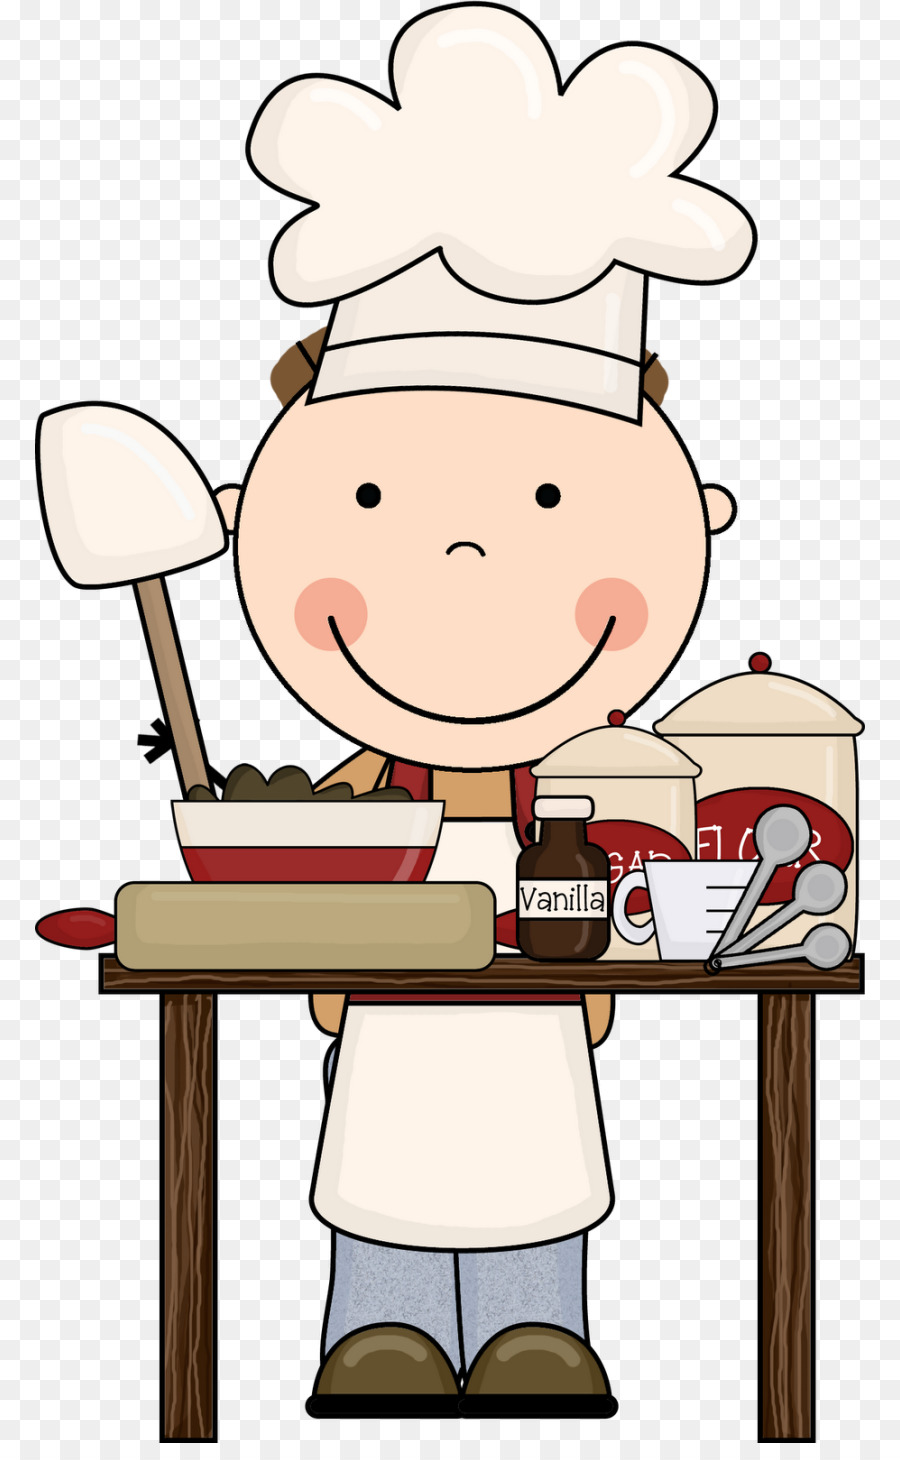 Bakery Chef Cartoon